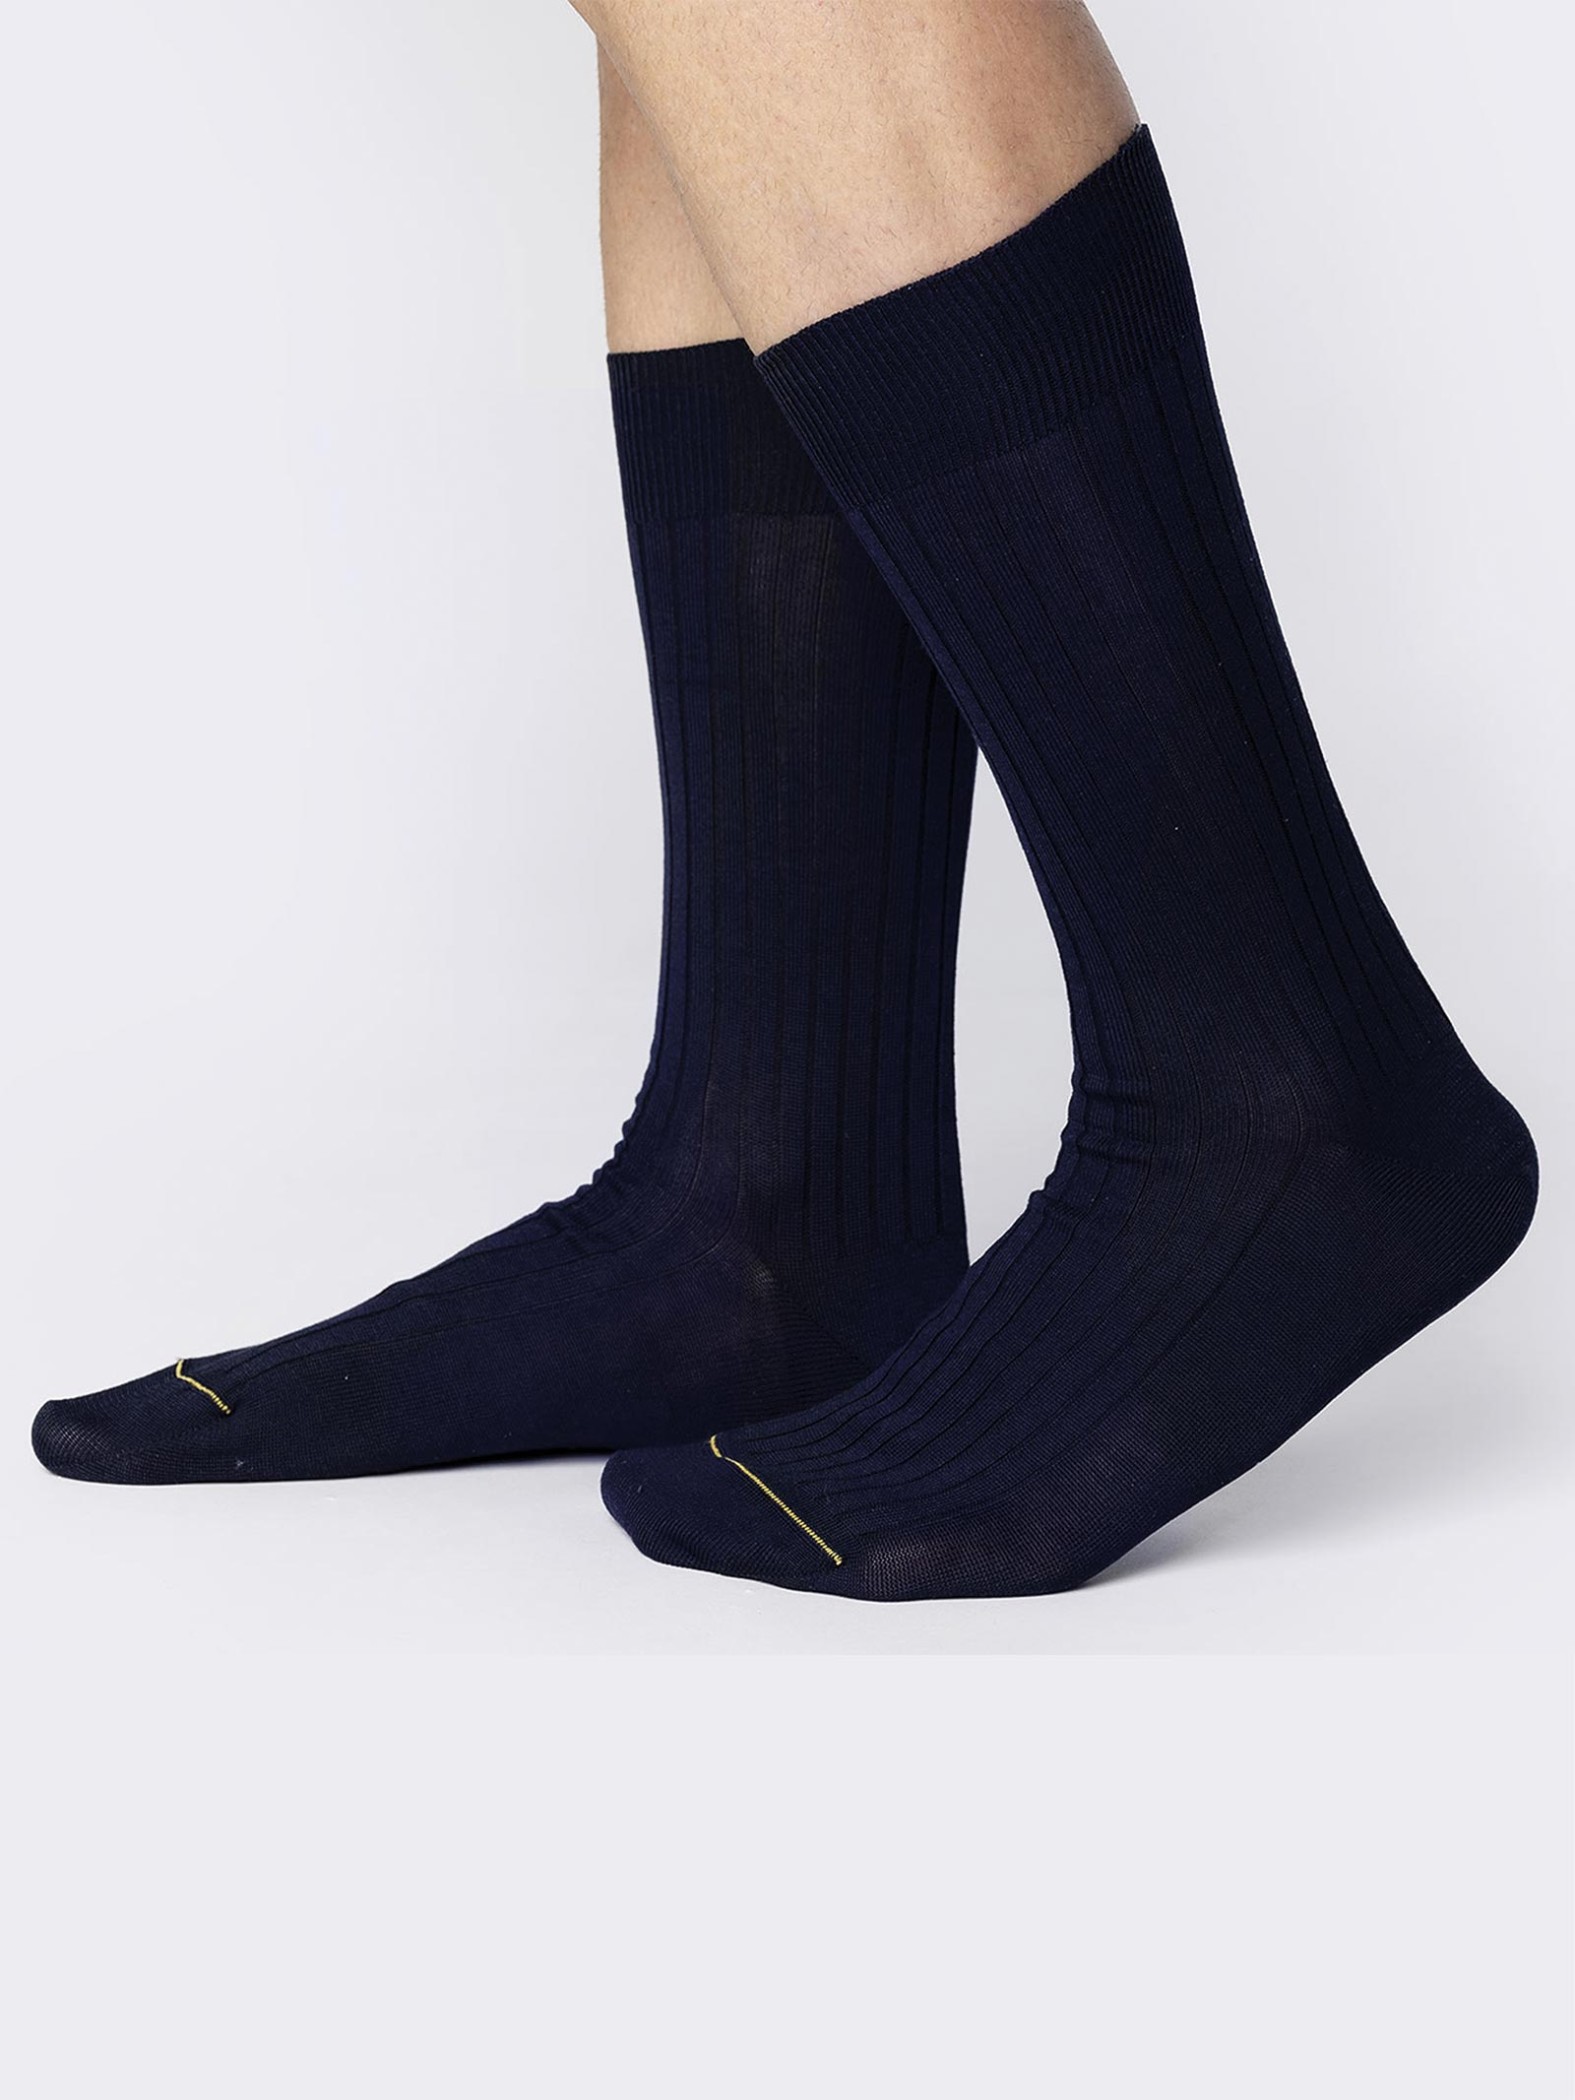 Kurze Socken in klassischer Rippstruktur, mittelschwere Baumwolle - verstärkte Spitze - Made in Italy